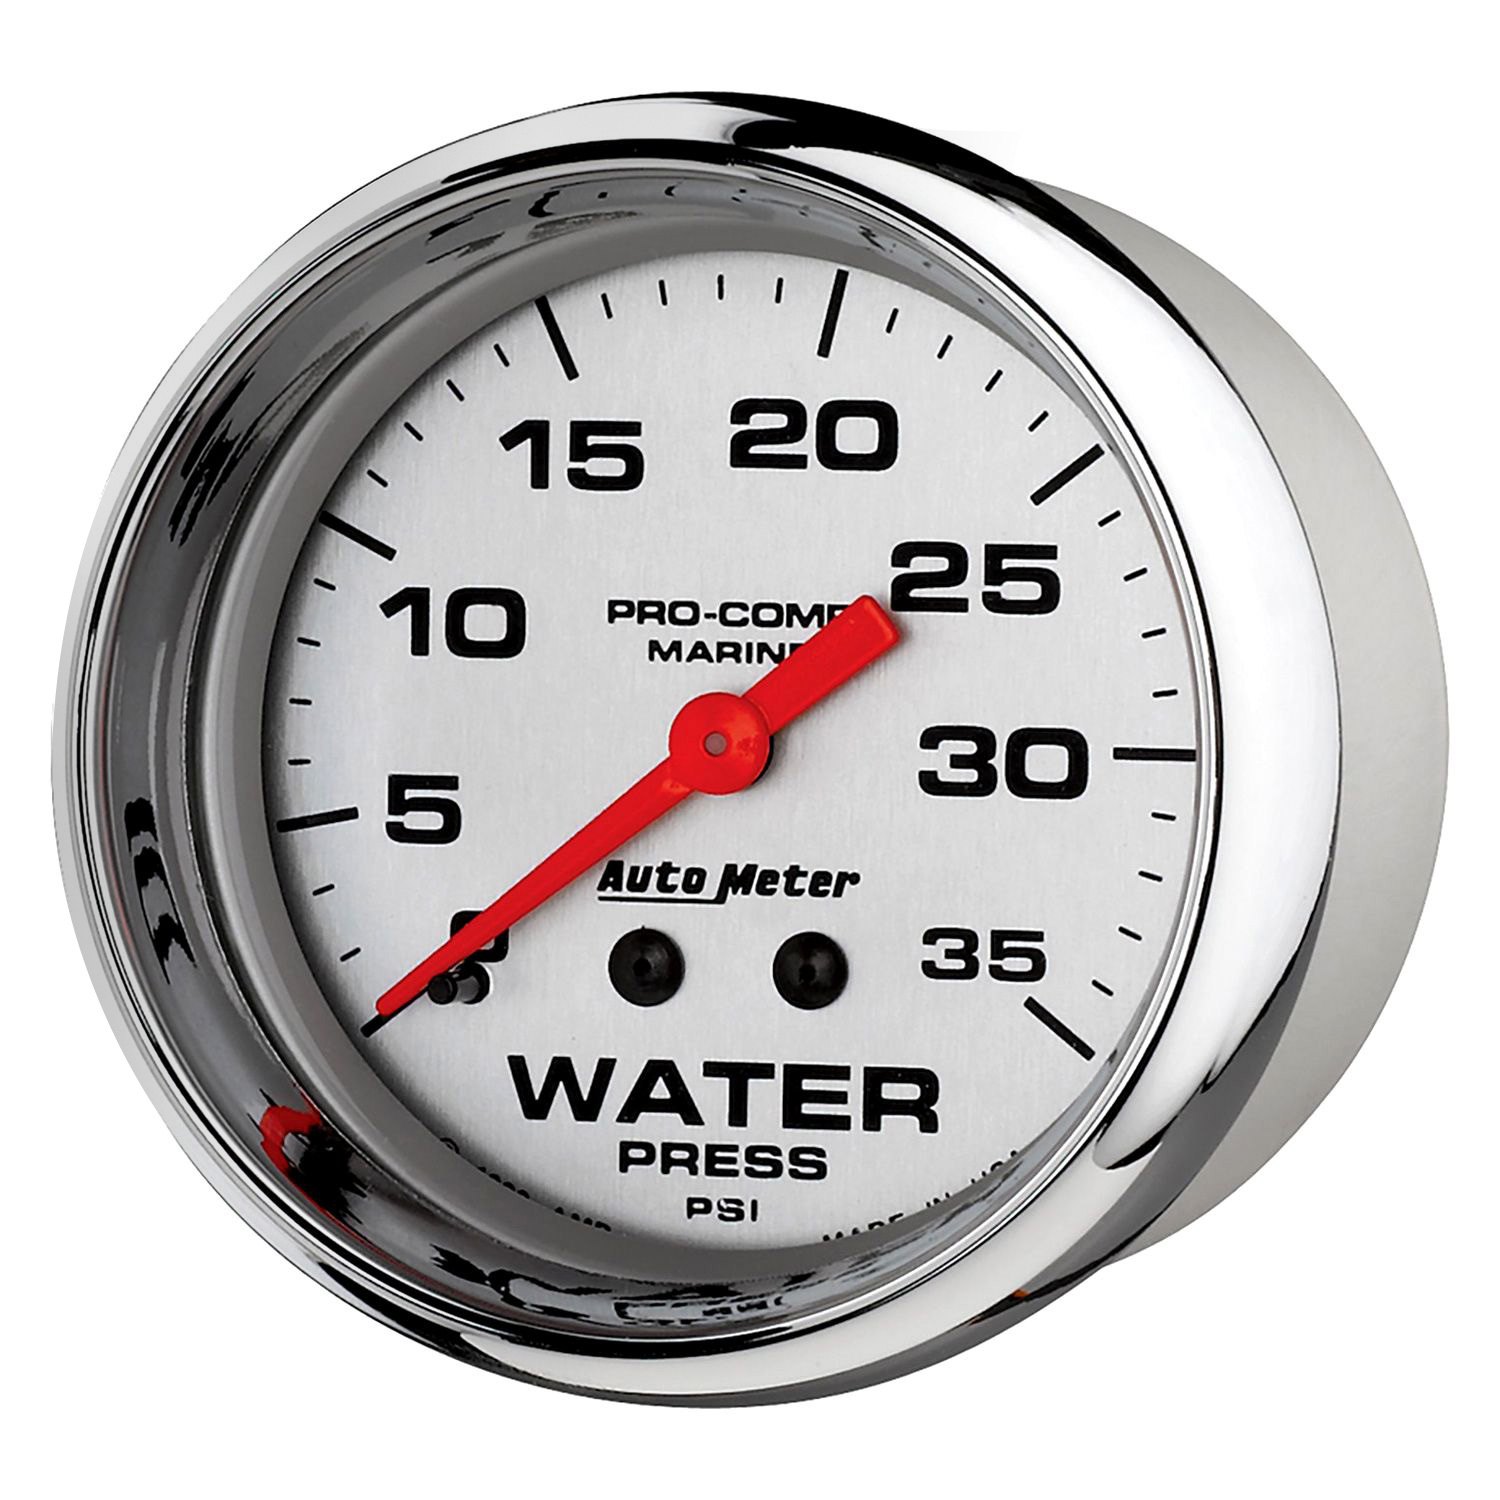 Mechanical Water Meter. How unfused Oil on a Pressure Gauge. 35 psi